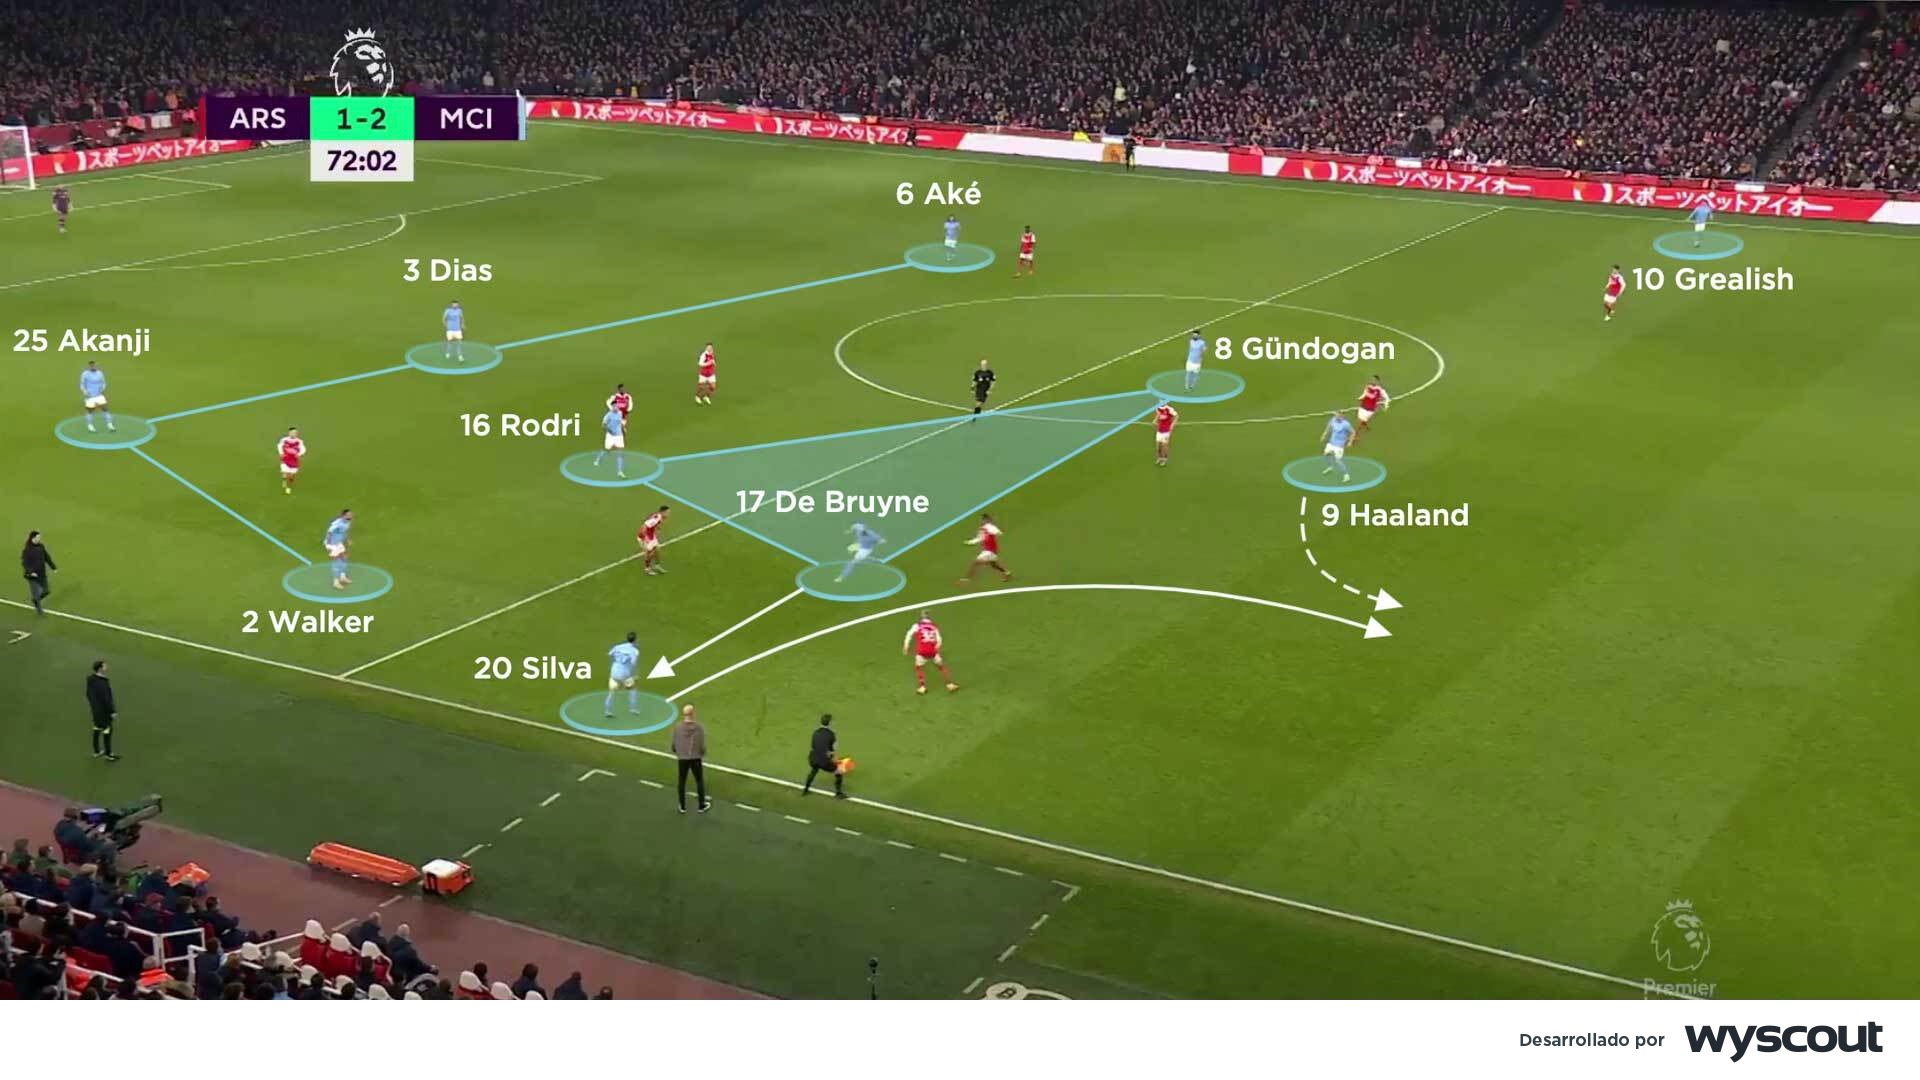 Duelo tactico en el centro del campo entre el Manchester City y el Arsenal